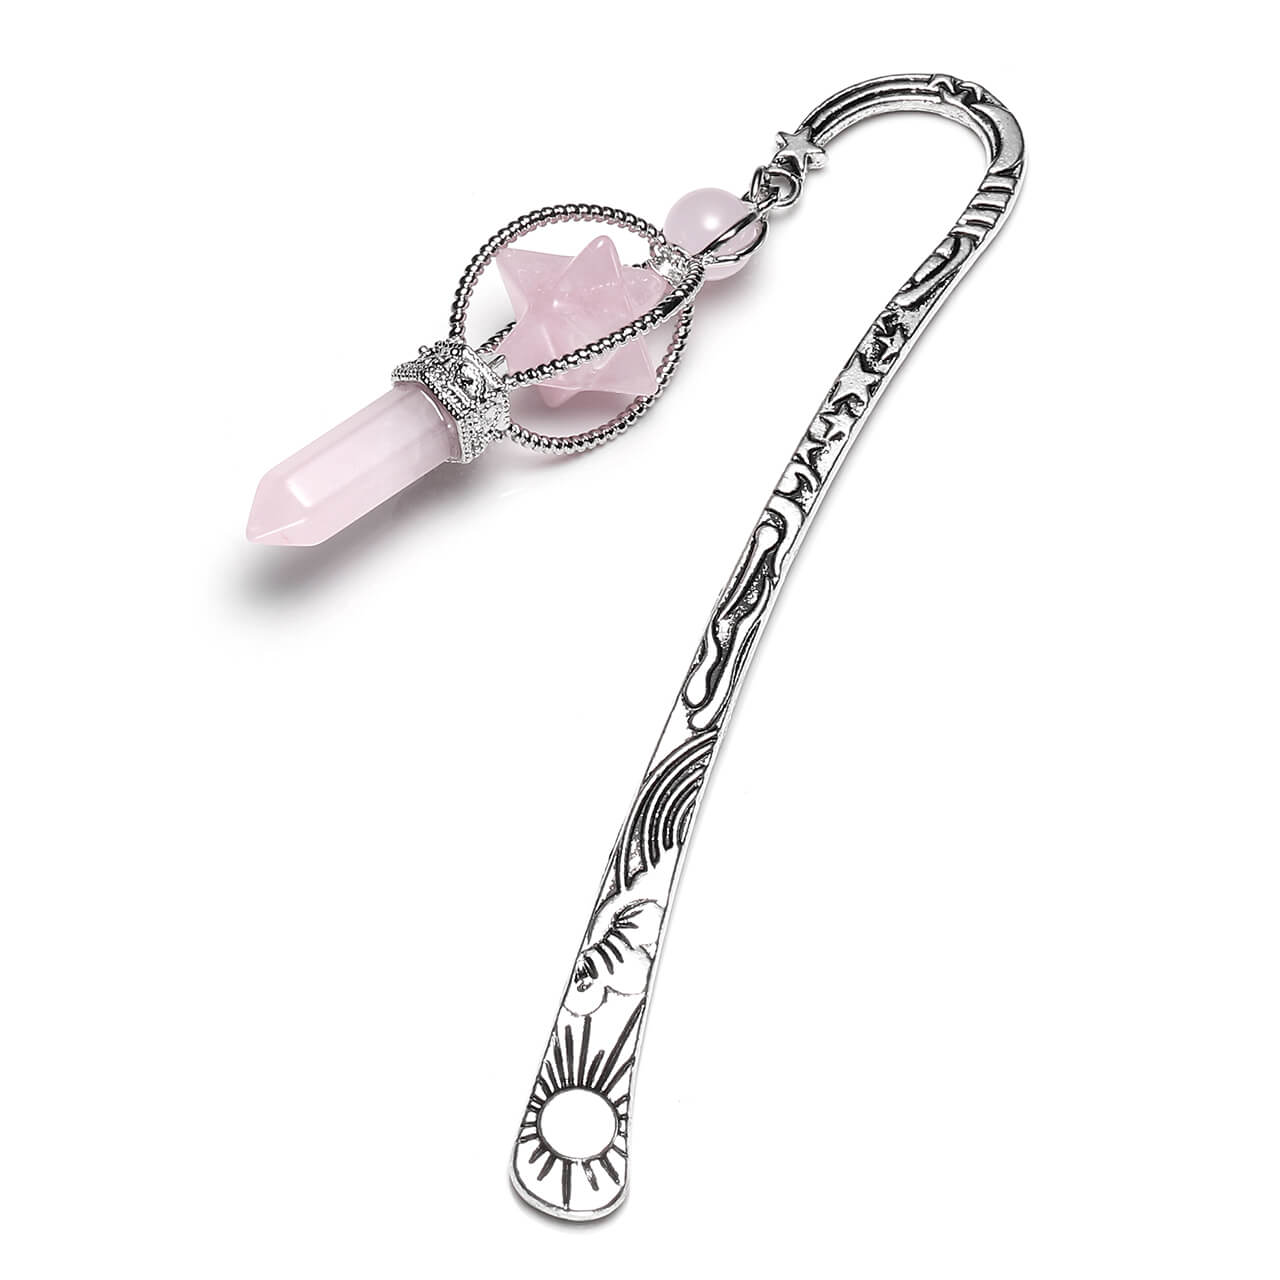 jovivi metal bookmark with rose quartz pendant, mba01430